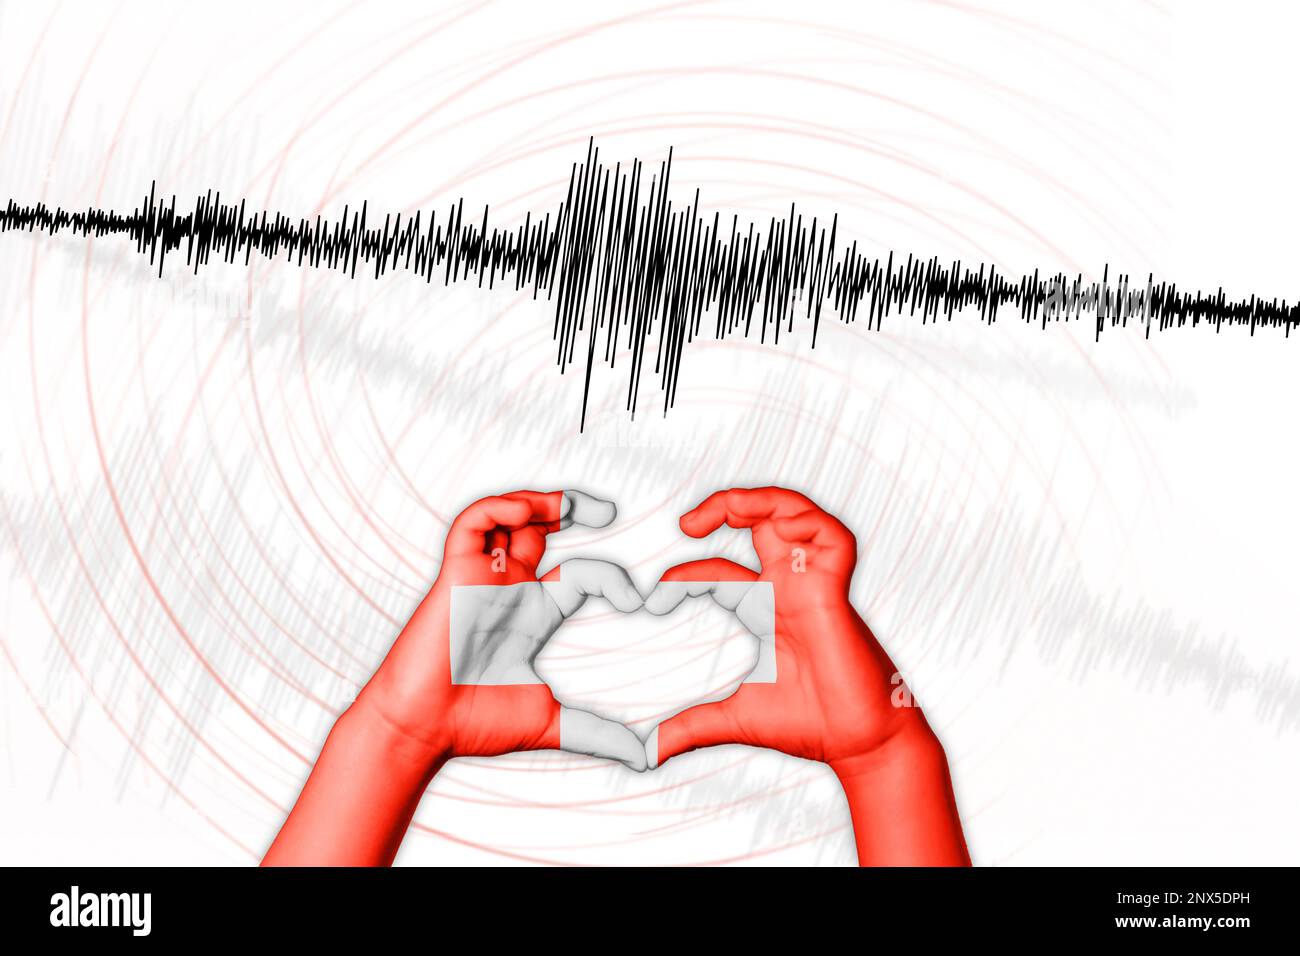 Seismische Aktivität Erdbeben Schweiz Symbol der Heart Richter Scale Stockfoto